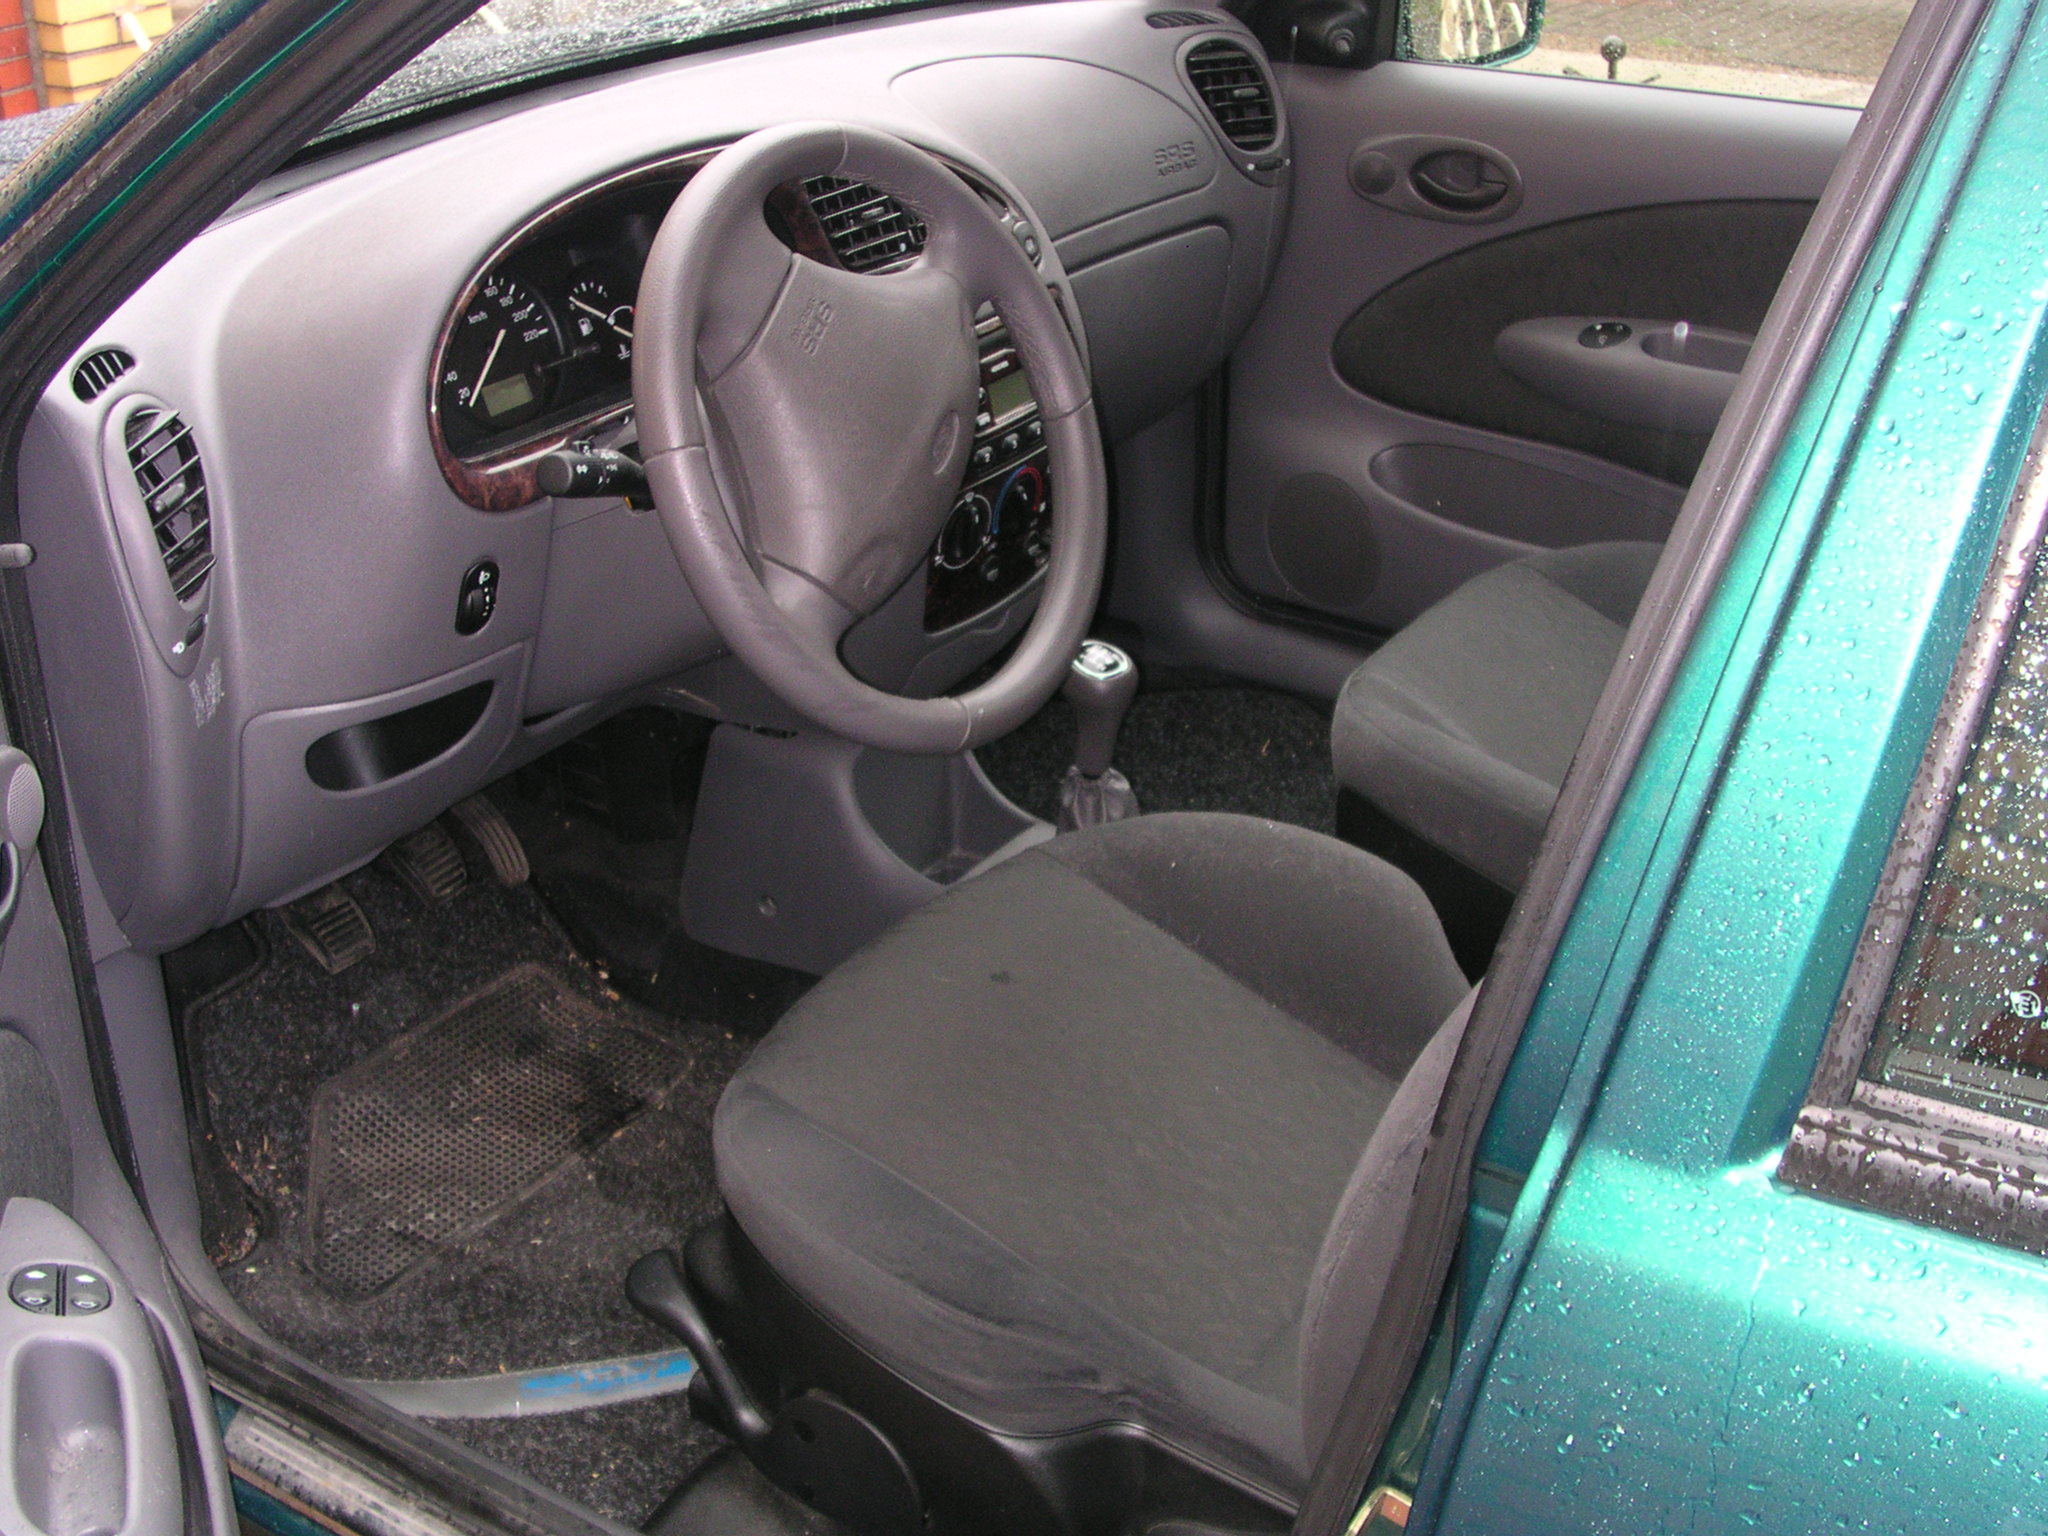 Voorvoegsel globaal Veroorloven File:Ford Fiesta 2001 Armaturen.jpg - Wikimedia Commons